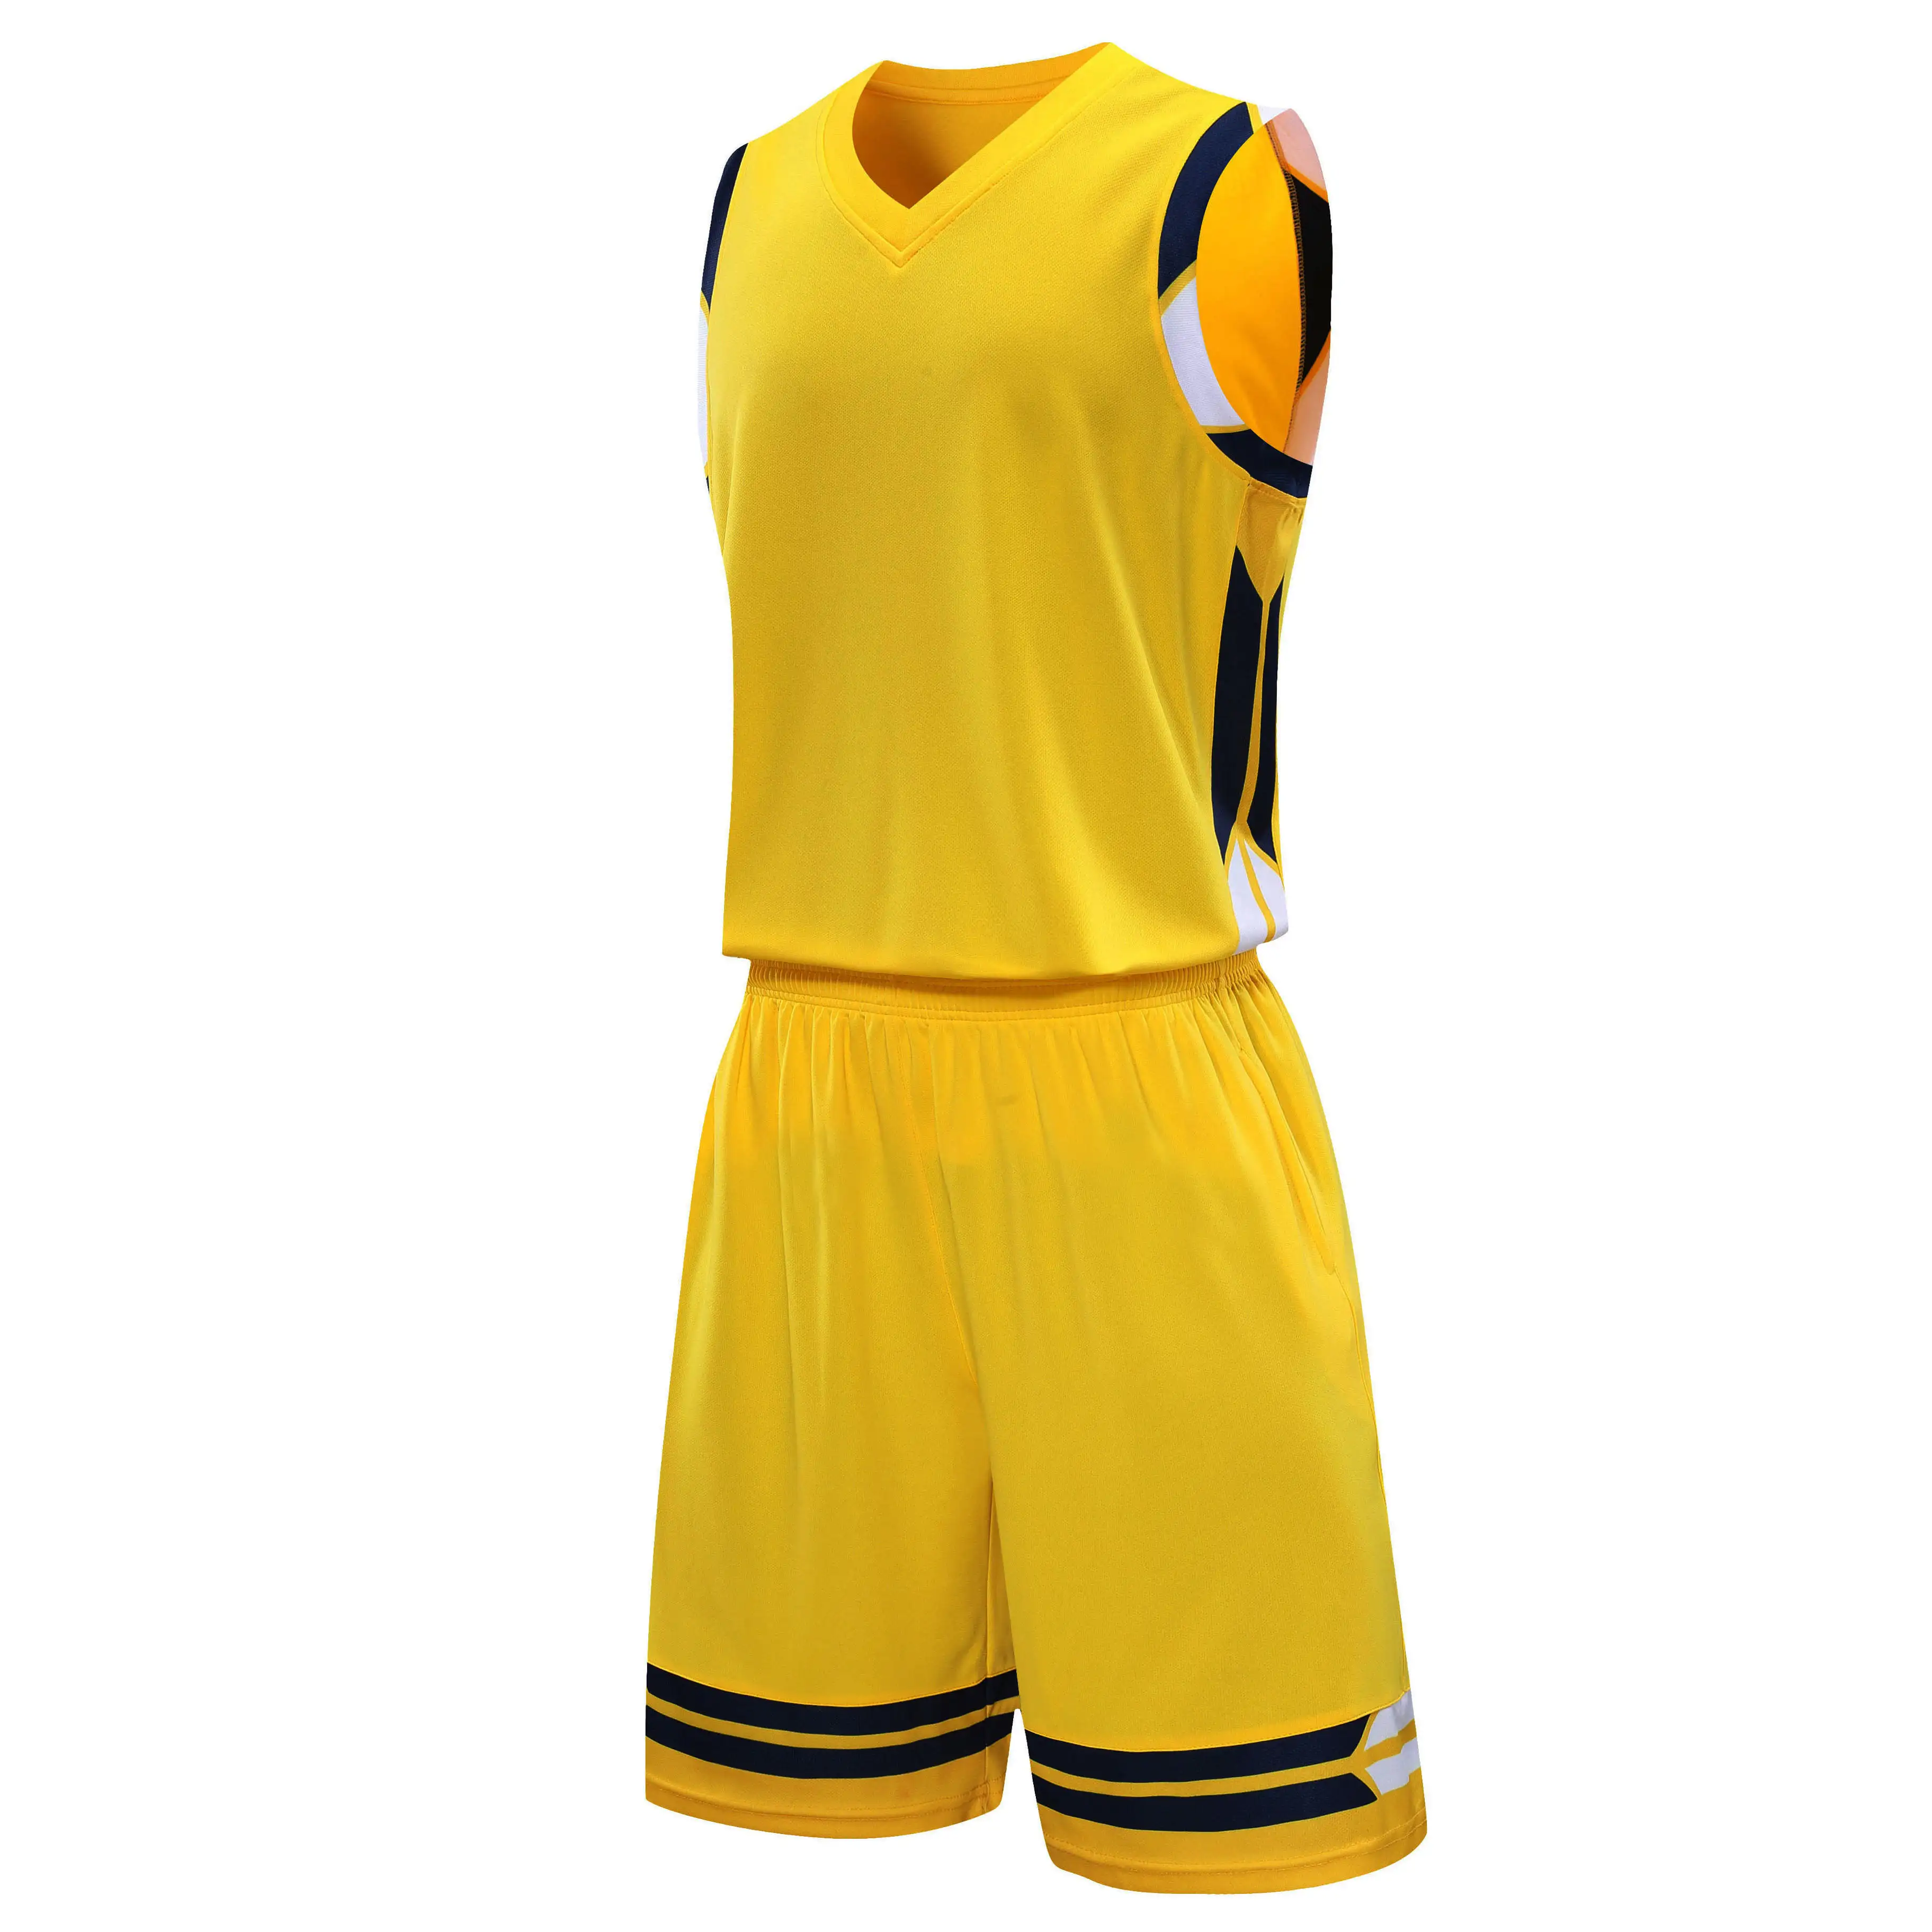 ओईएम ब्लैंक प्लस साइज मेश नवीनतम सब्लिमेशन बास्केटबॉल शॉर्ट यूनिफॉर्म कलर ब्लू ड्रेस डिजाइन कस्टम बास्केटबॉल जर्सी पुरुषों के लिए